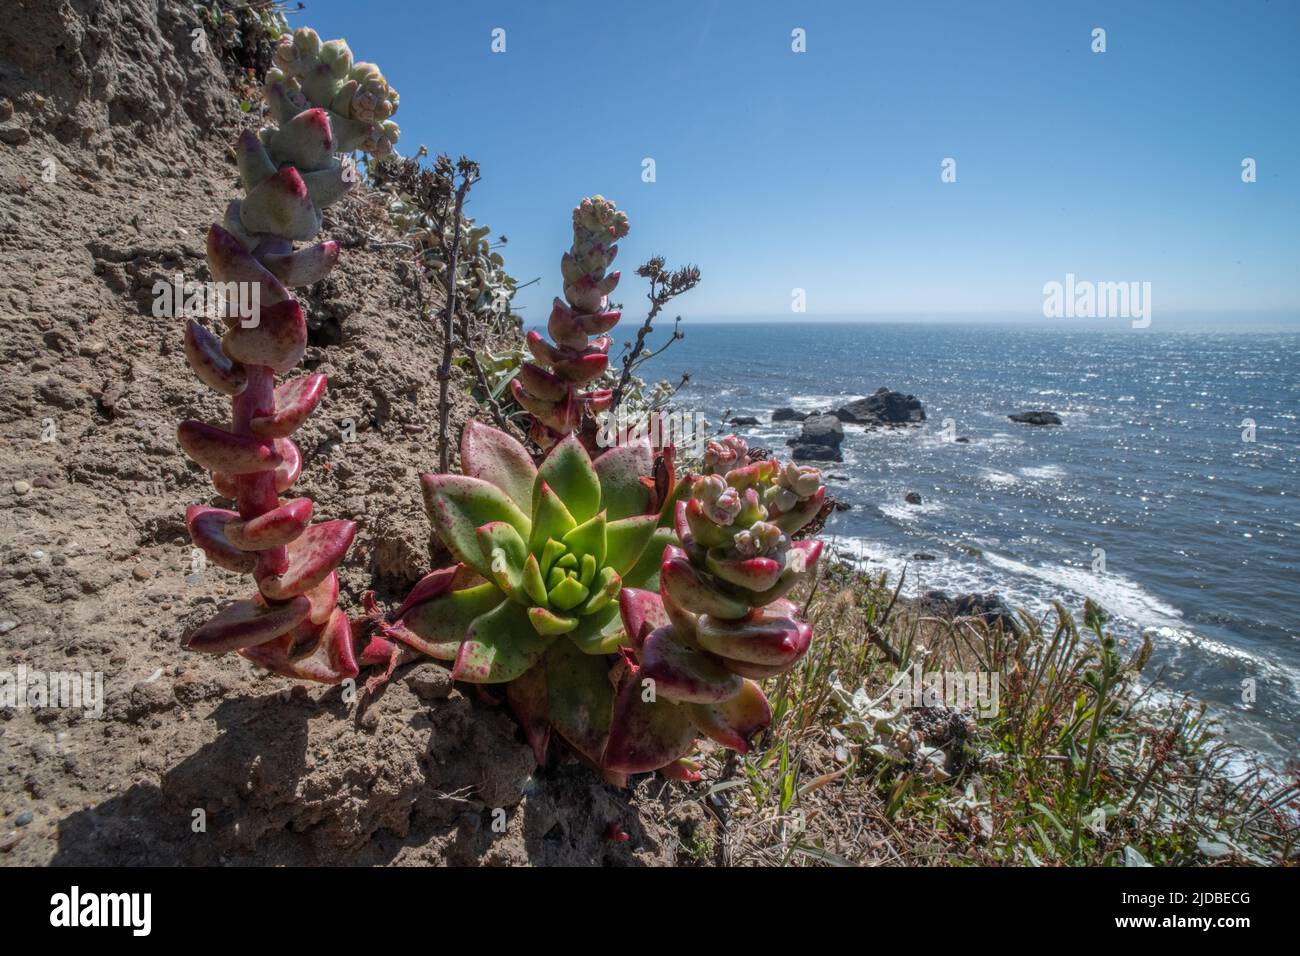 Meeressalat, Sandsalat oder Küste Dudleya (Dudleya caespitosa) eine Sukulente an der Küste aus Nordkalifornien, USA. Stockfoto